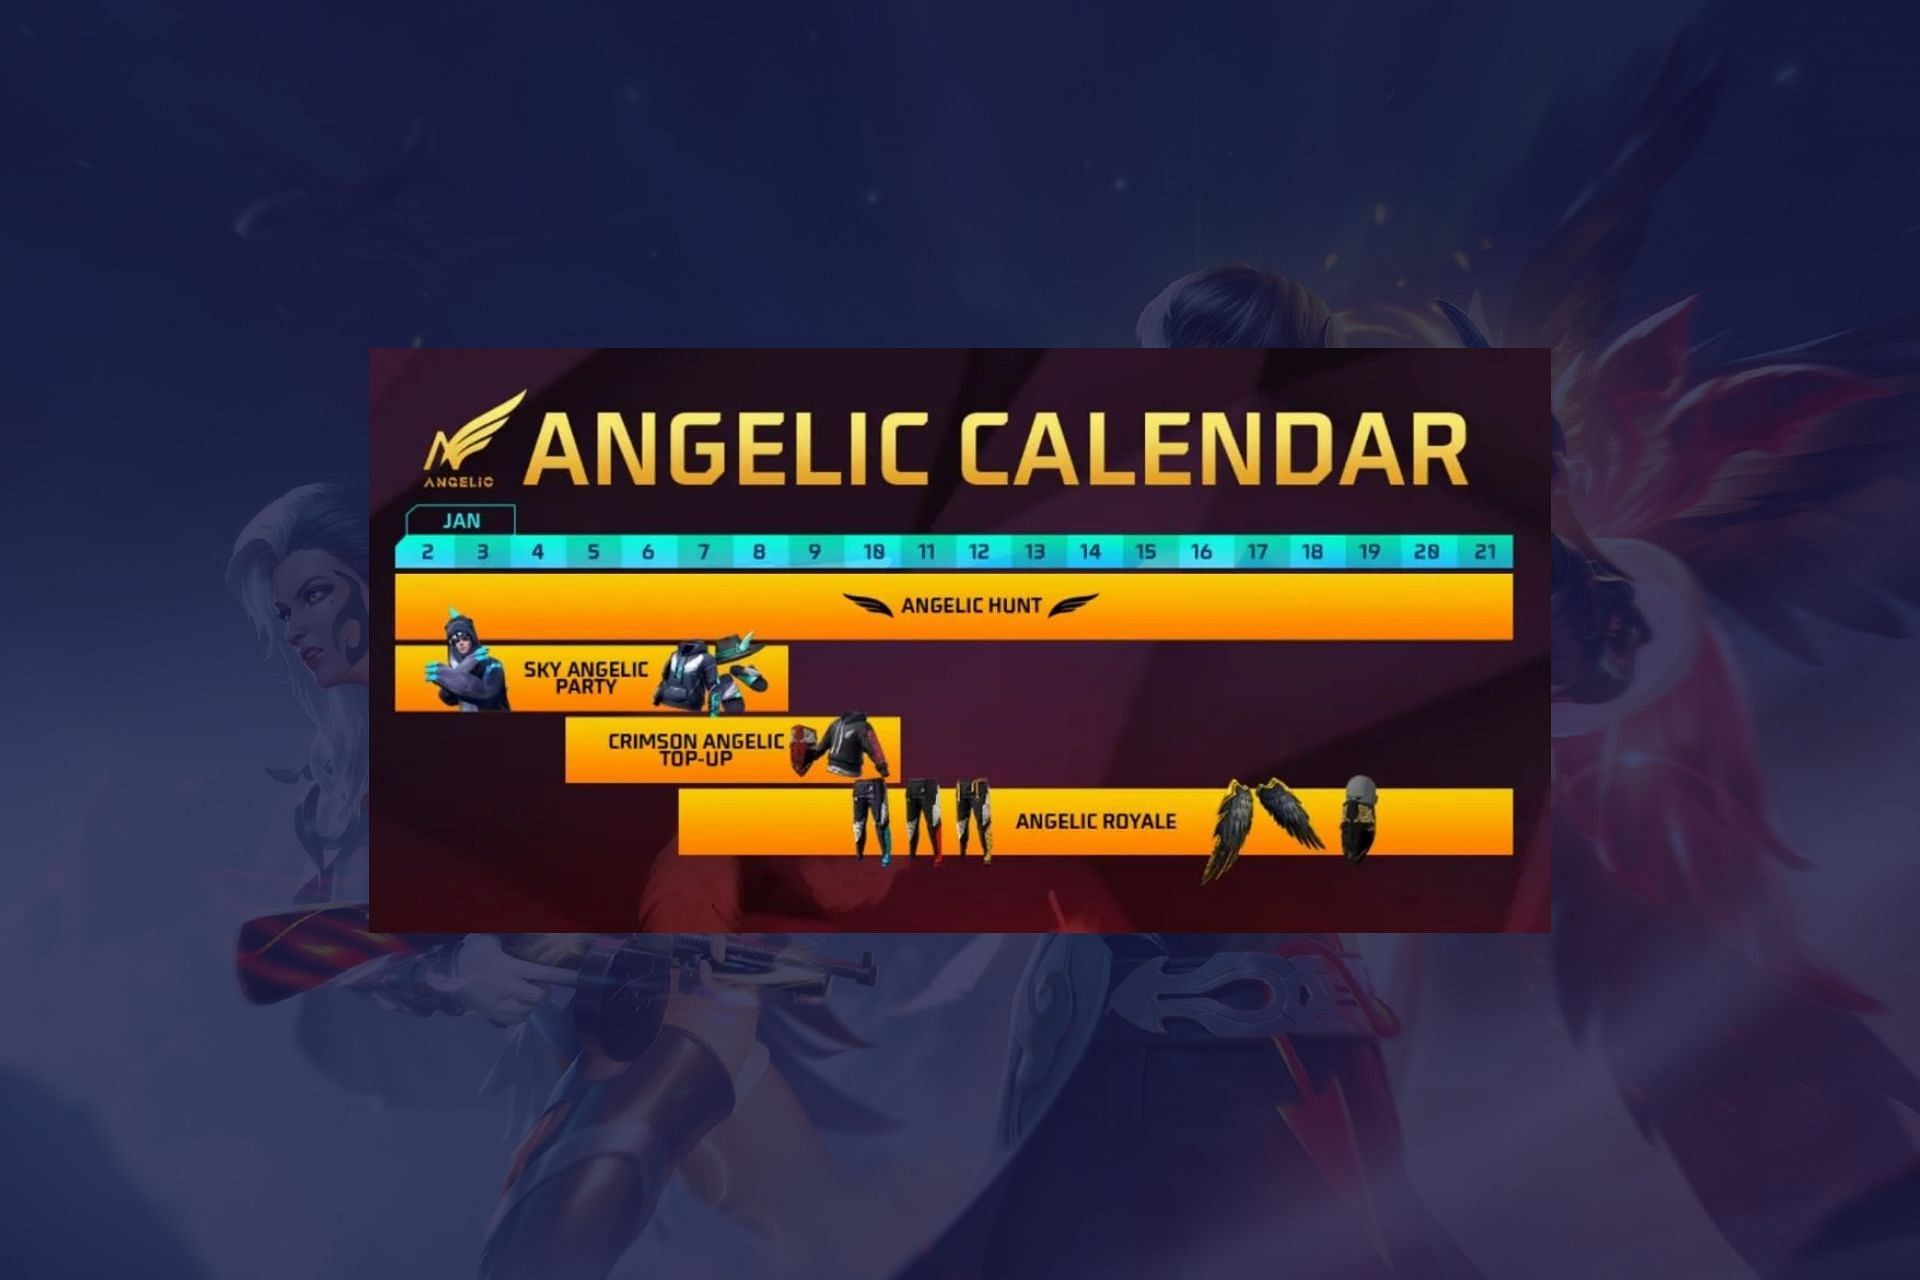 Angelic calendar has been leaked (Image via Garena)